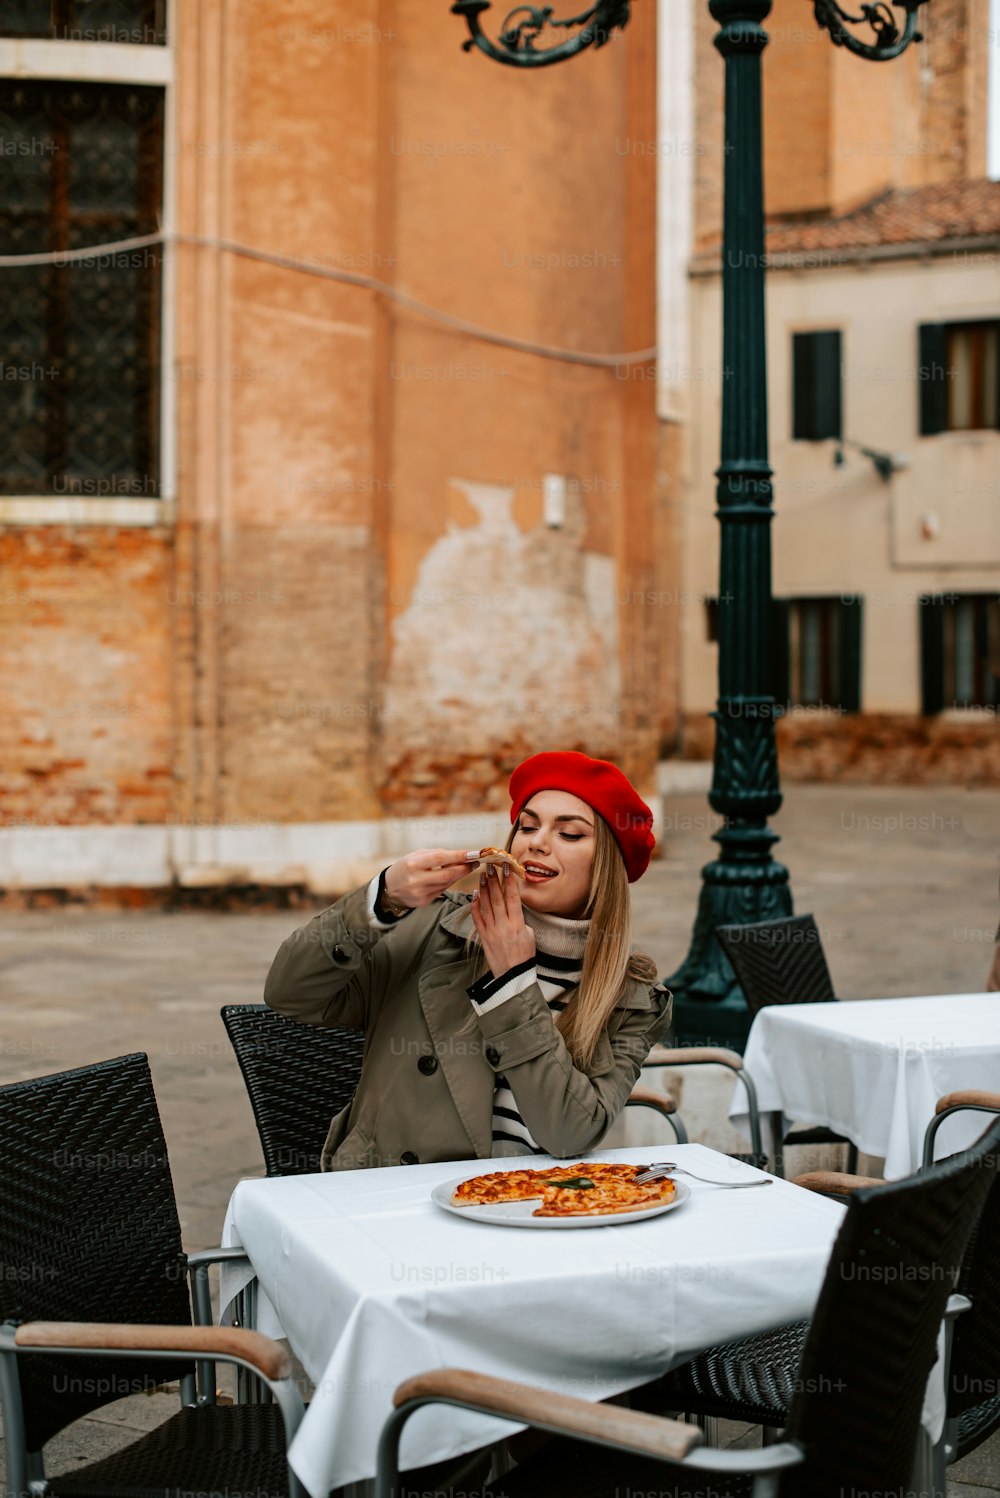 Una mujer sentada en una mesa con una pizza frente a ella